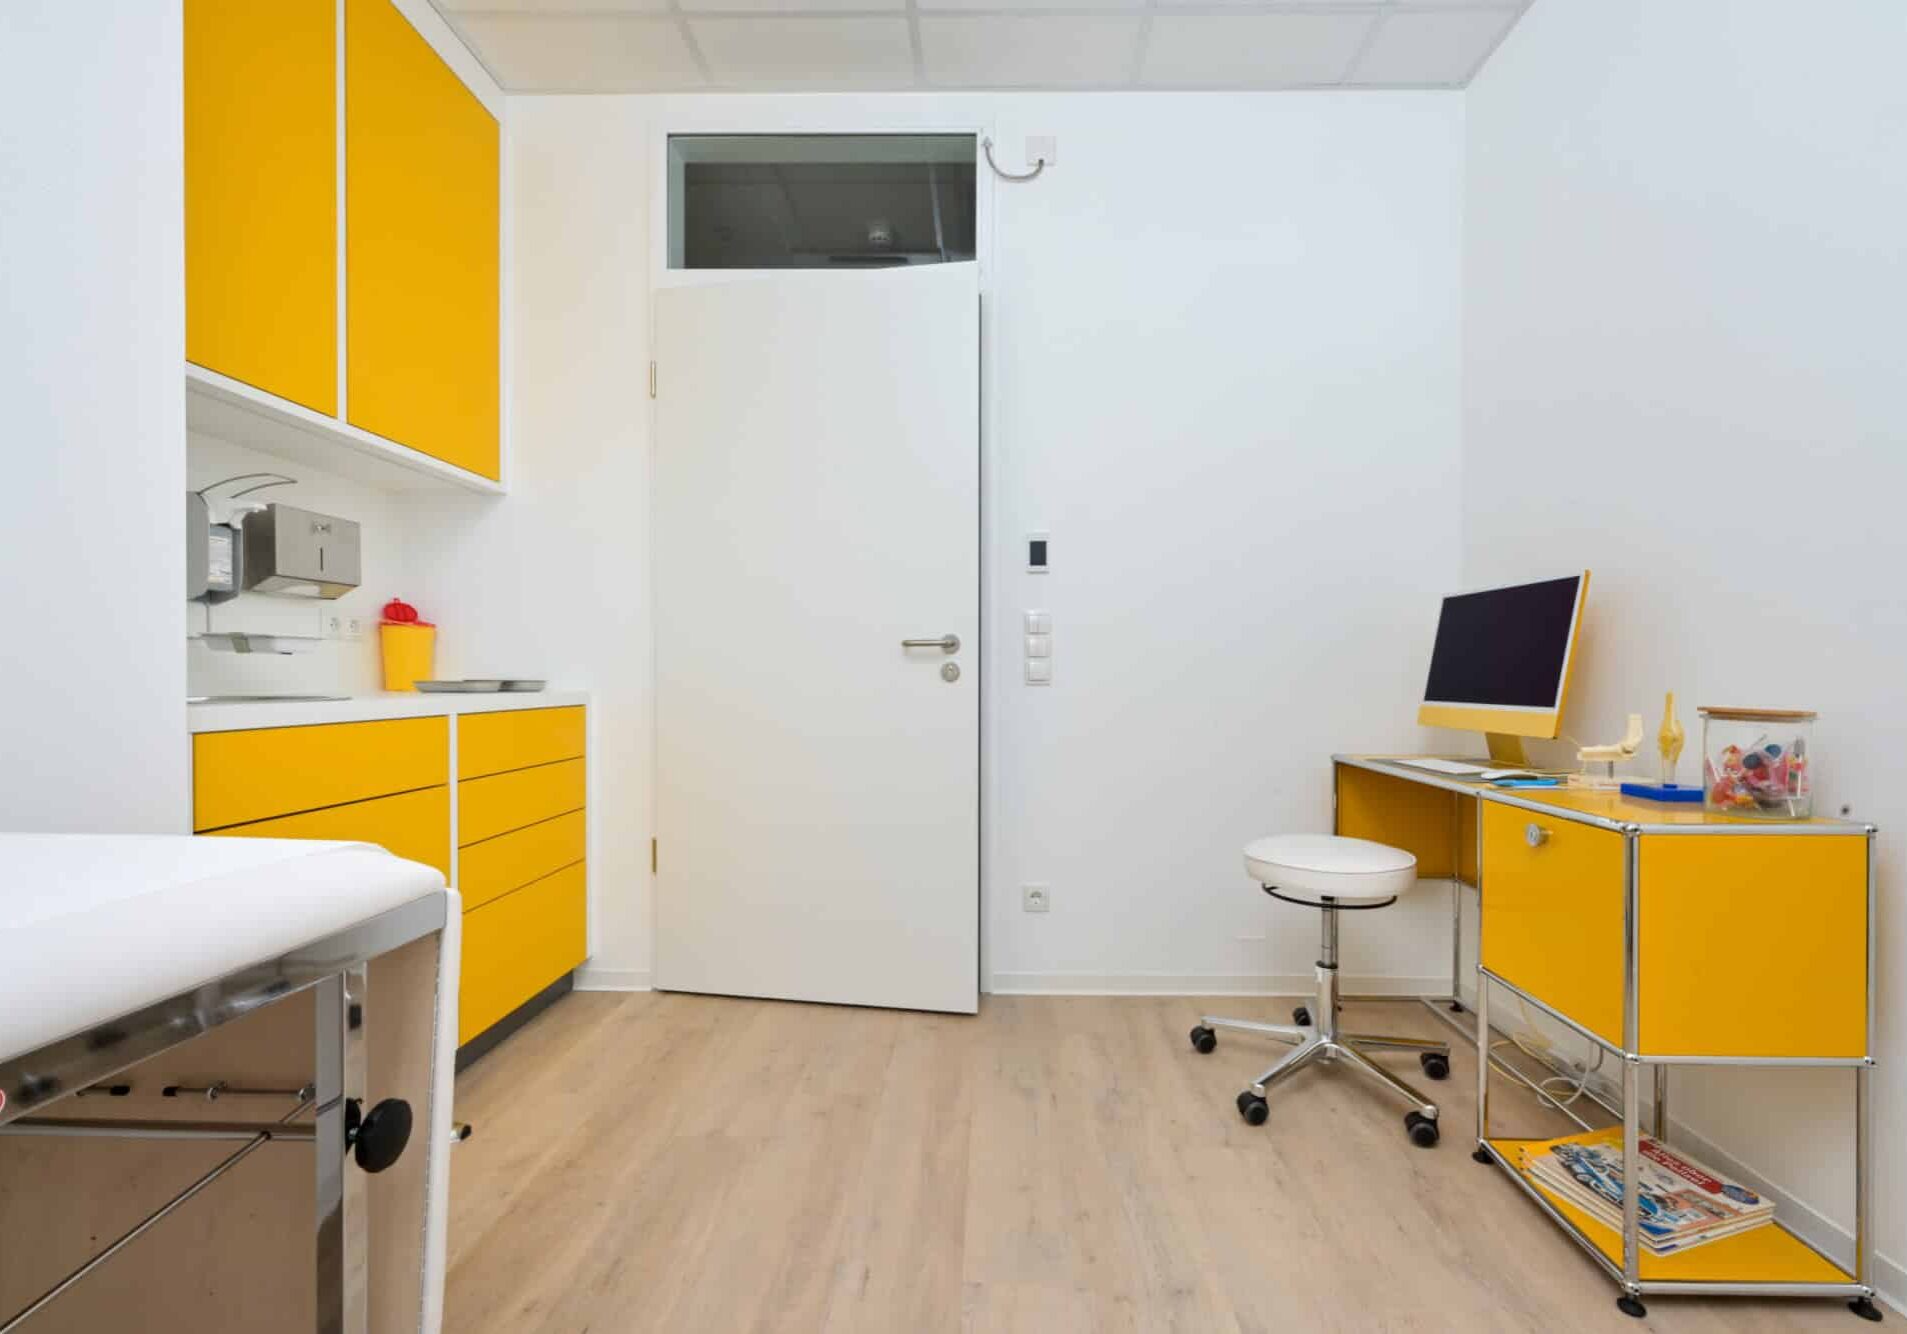 Behandlungsraum mit weißer Liege, gelben Schränken, weißem Hocker und Schreibtisch mit Computer und medizinischen Utensilien.